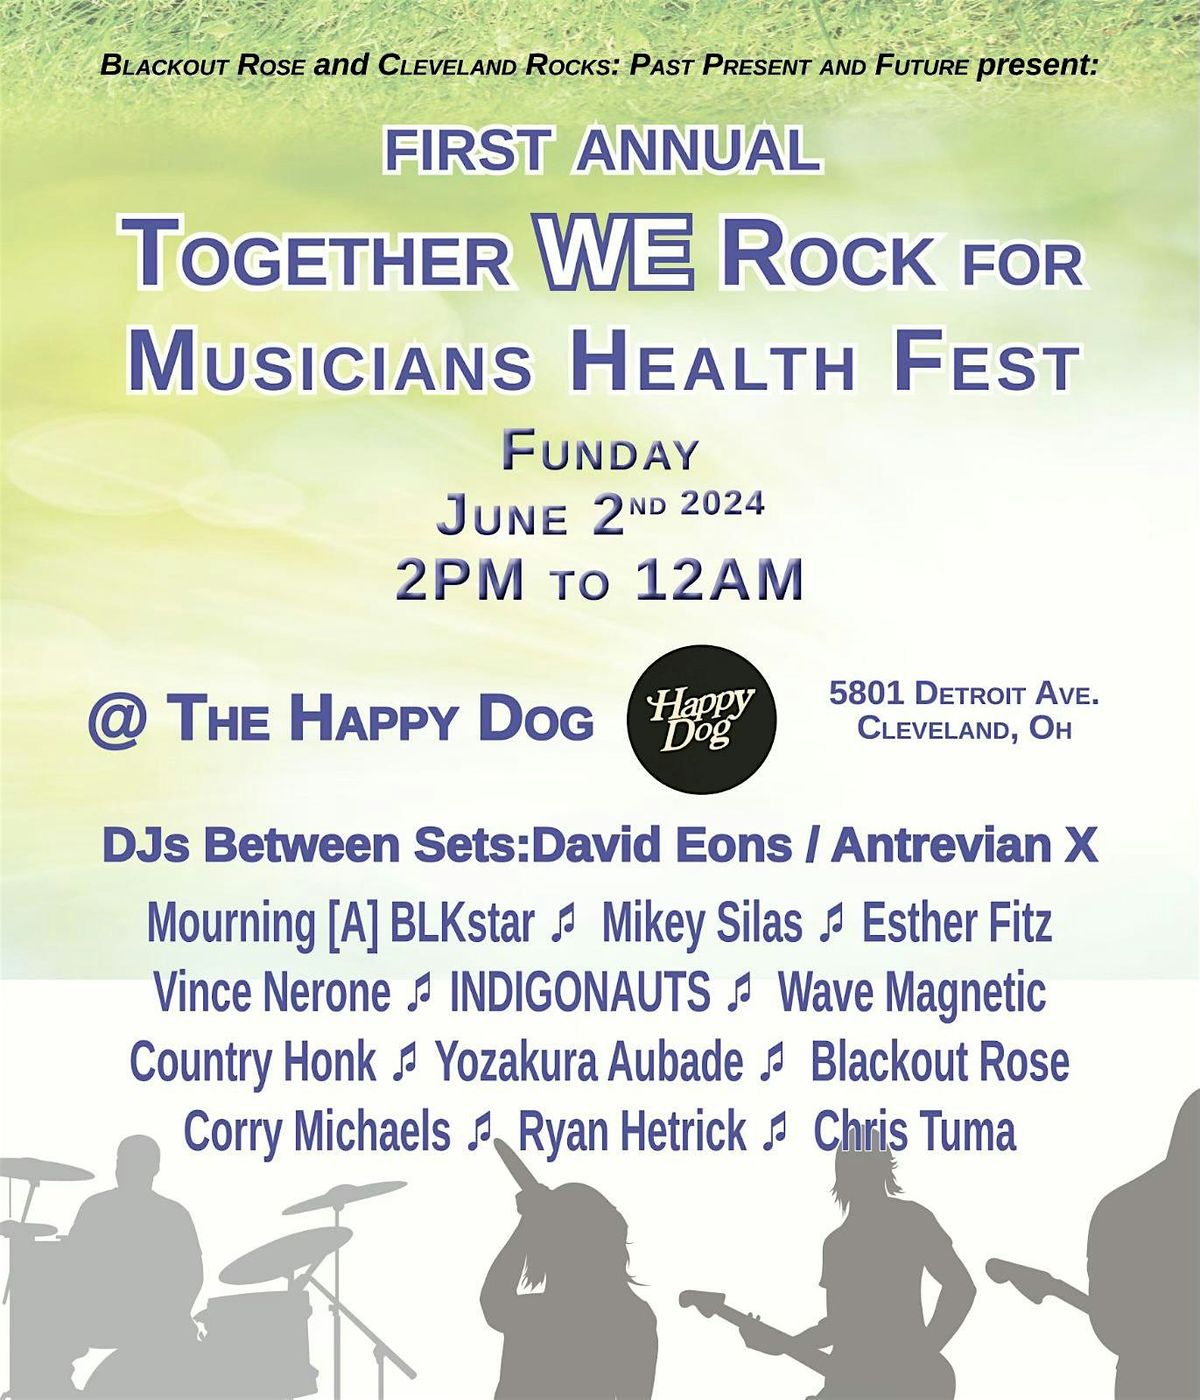 Together We Rock for Musicians' Health Fest